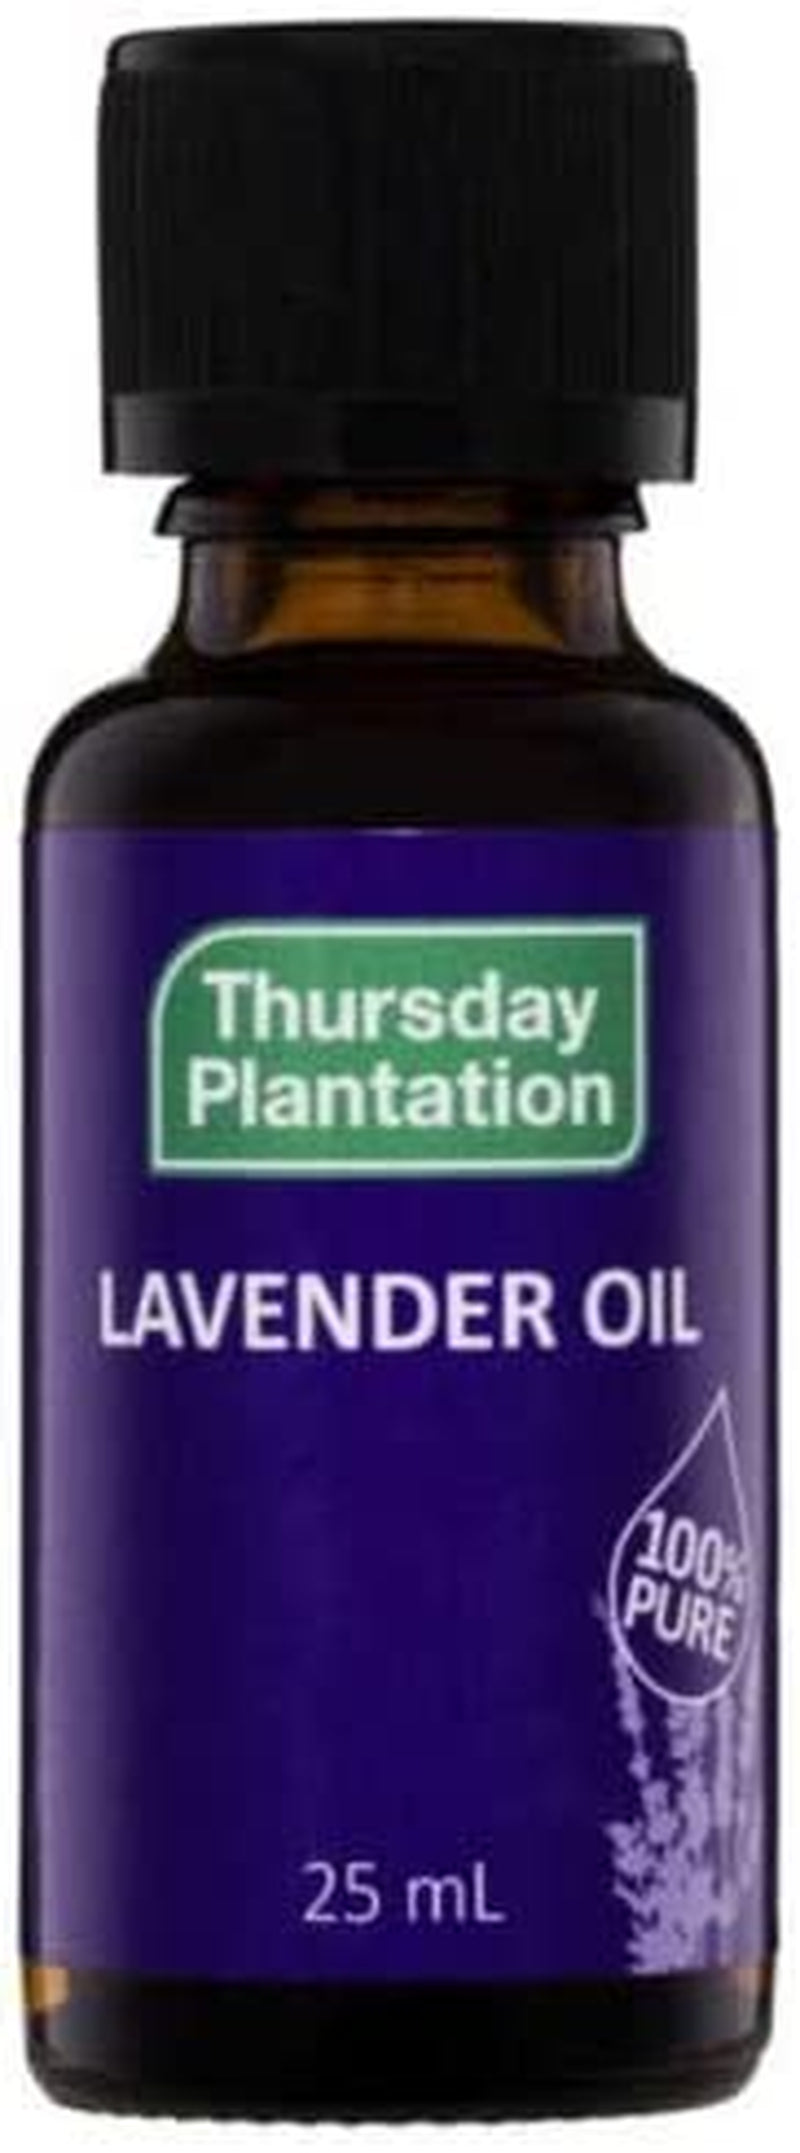 100 Percent Pure Lavender Oil 25 Ml